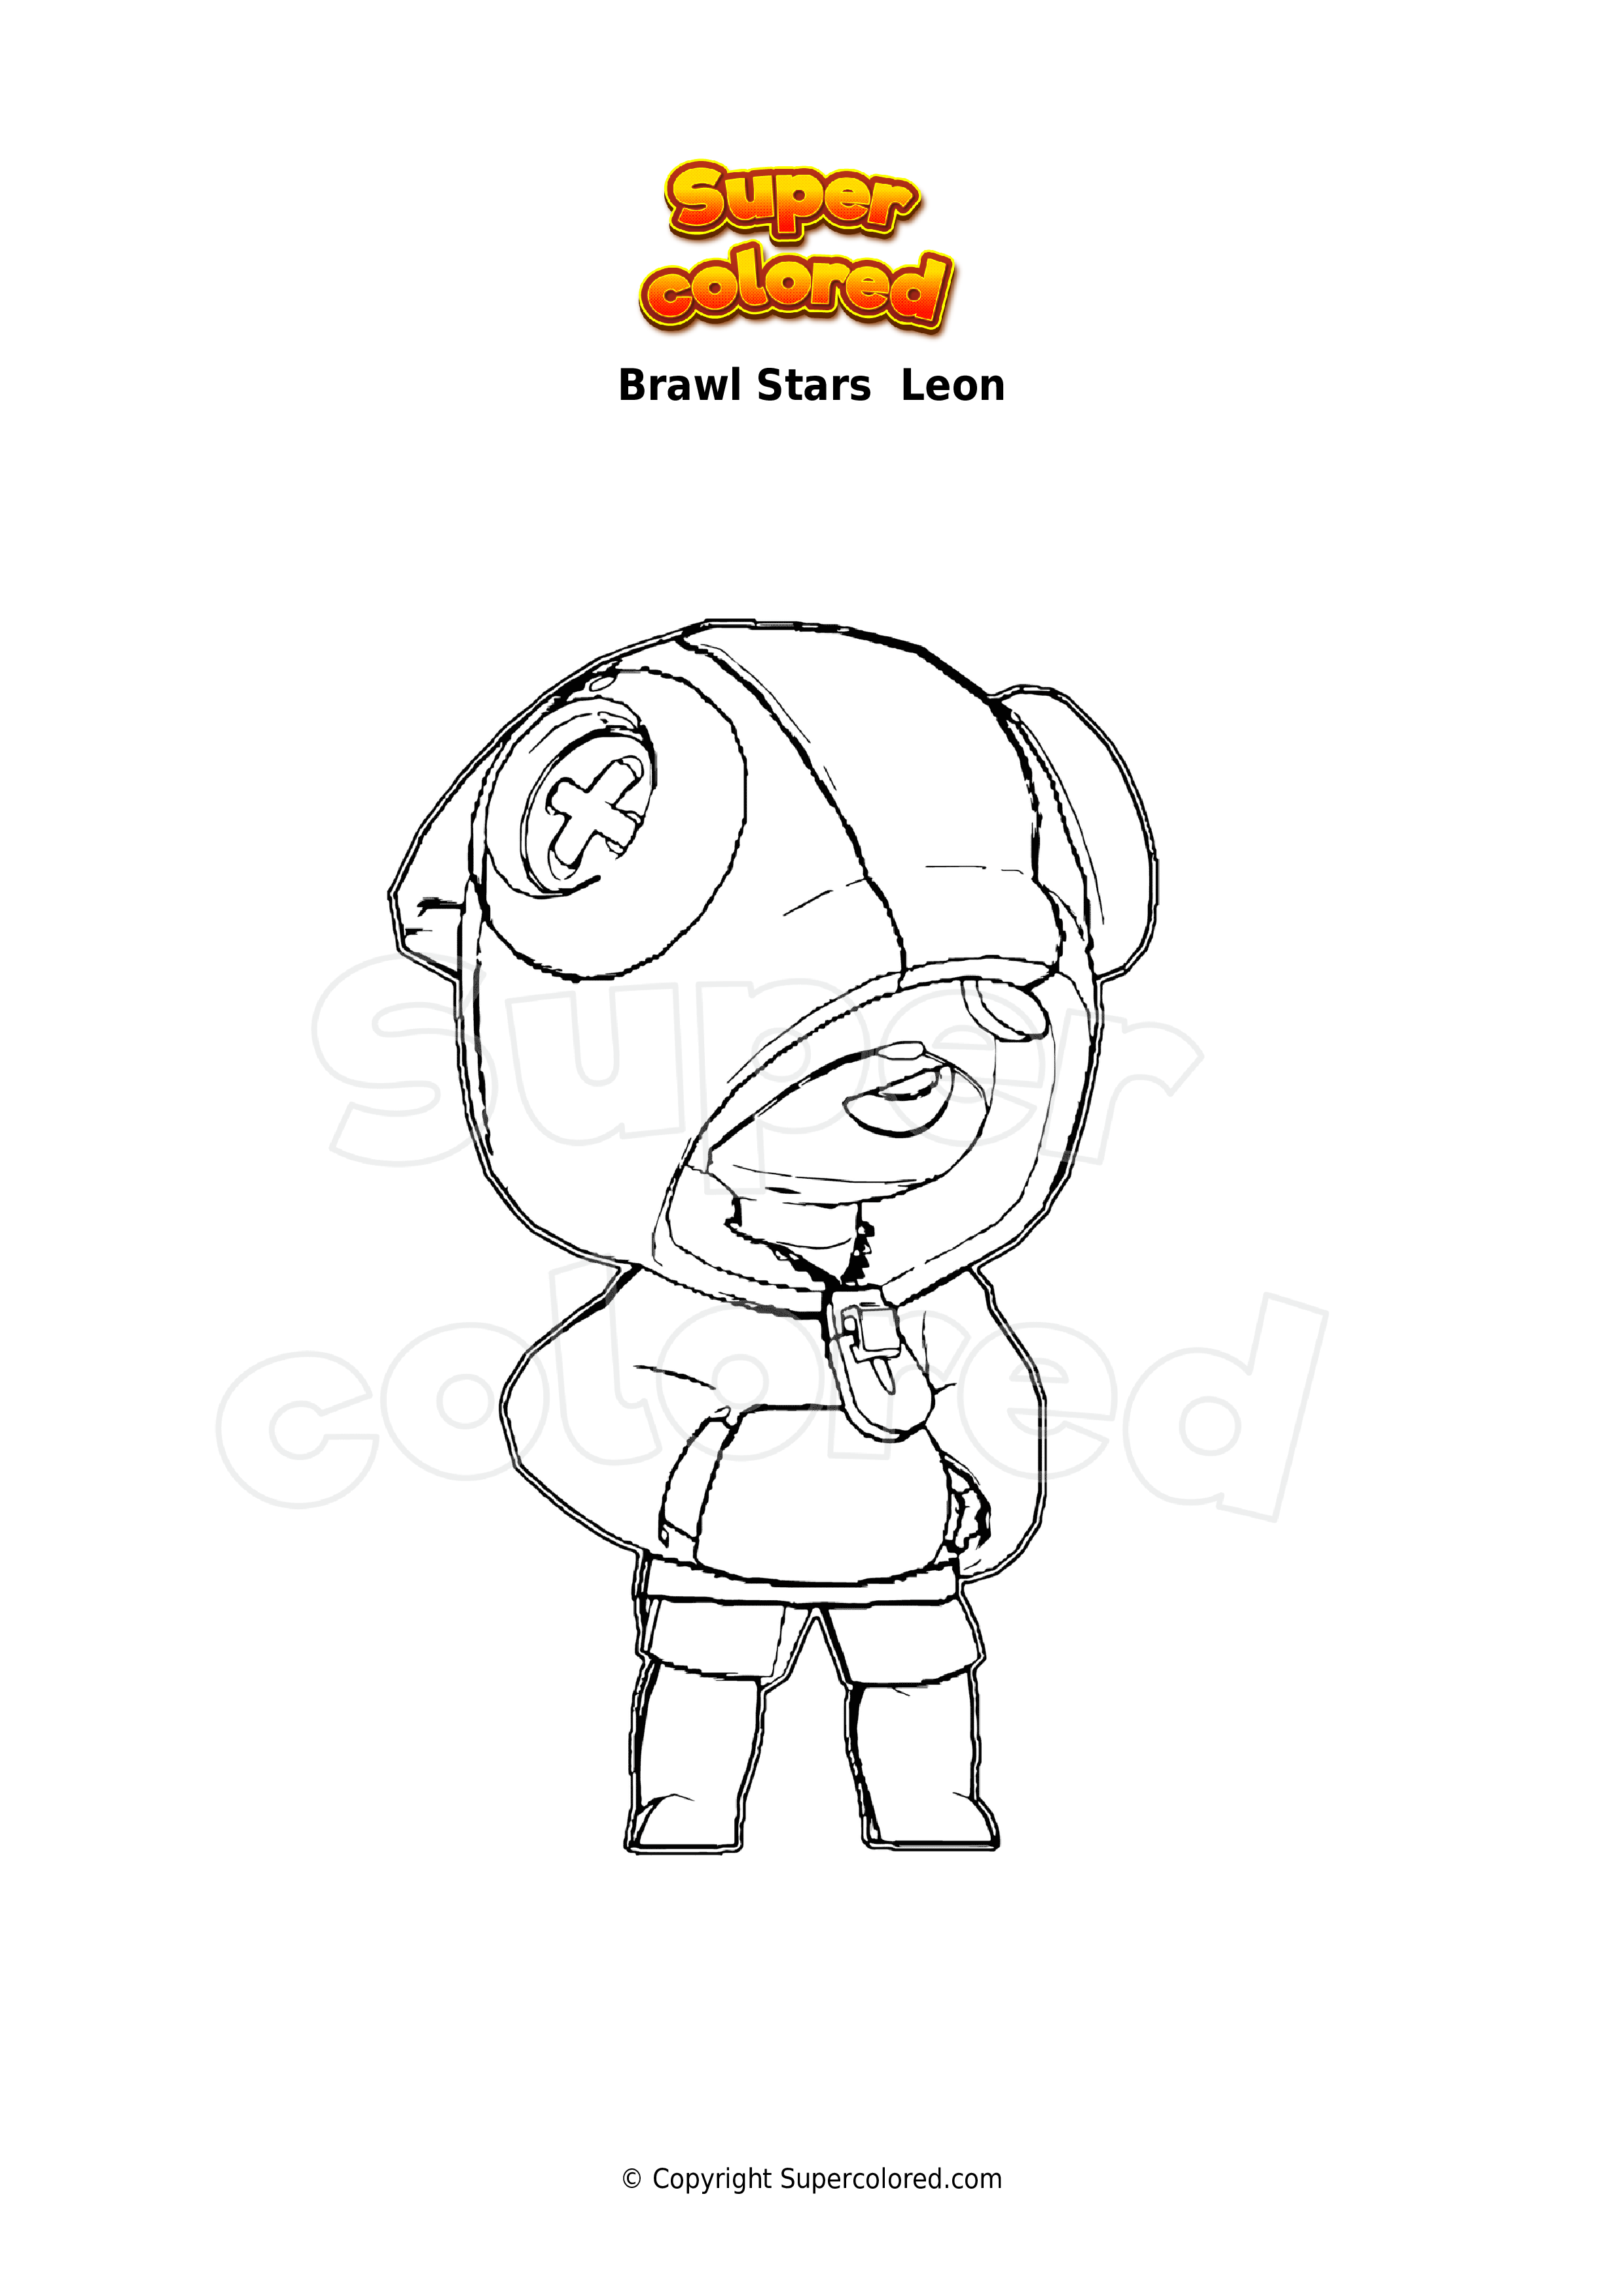 Disegno Da Colorare Brawl Stars Leon Supercolored Com - leon personaggi brawl stars da colorare